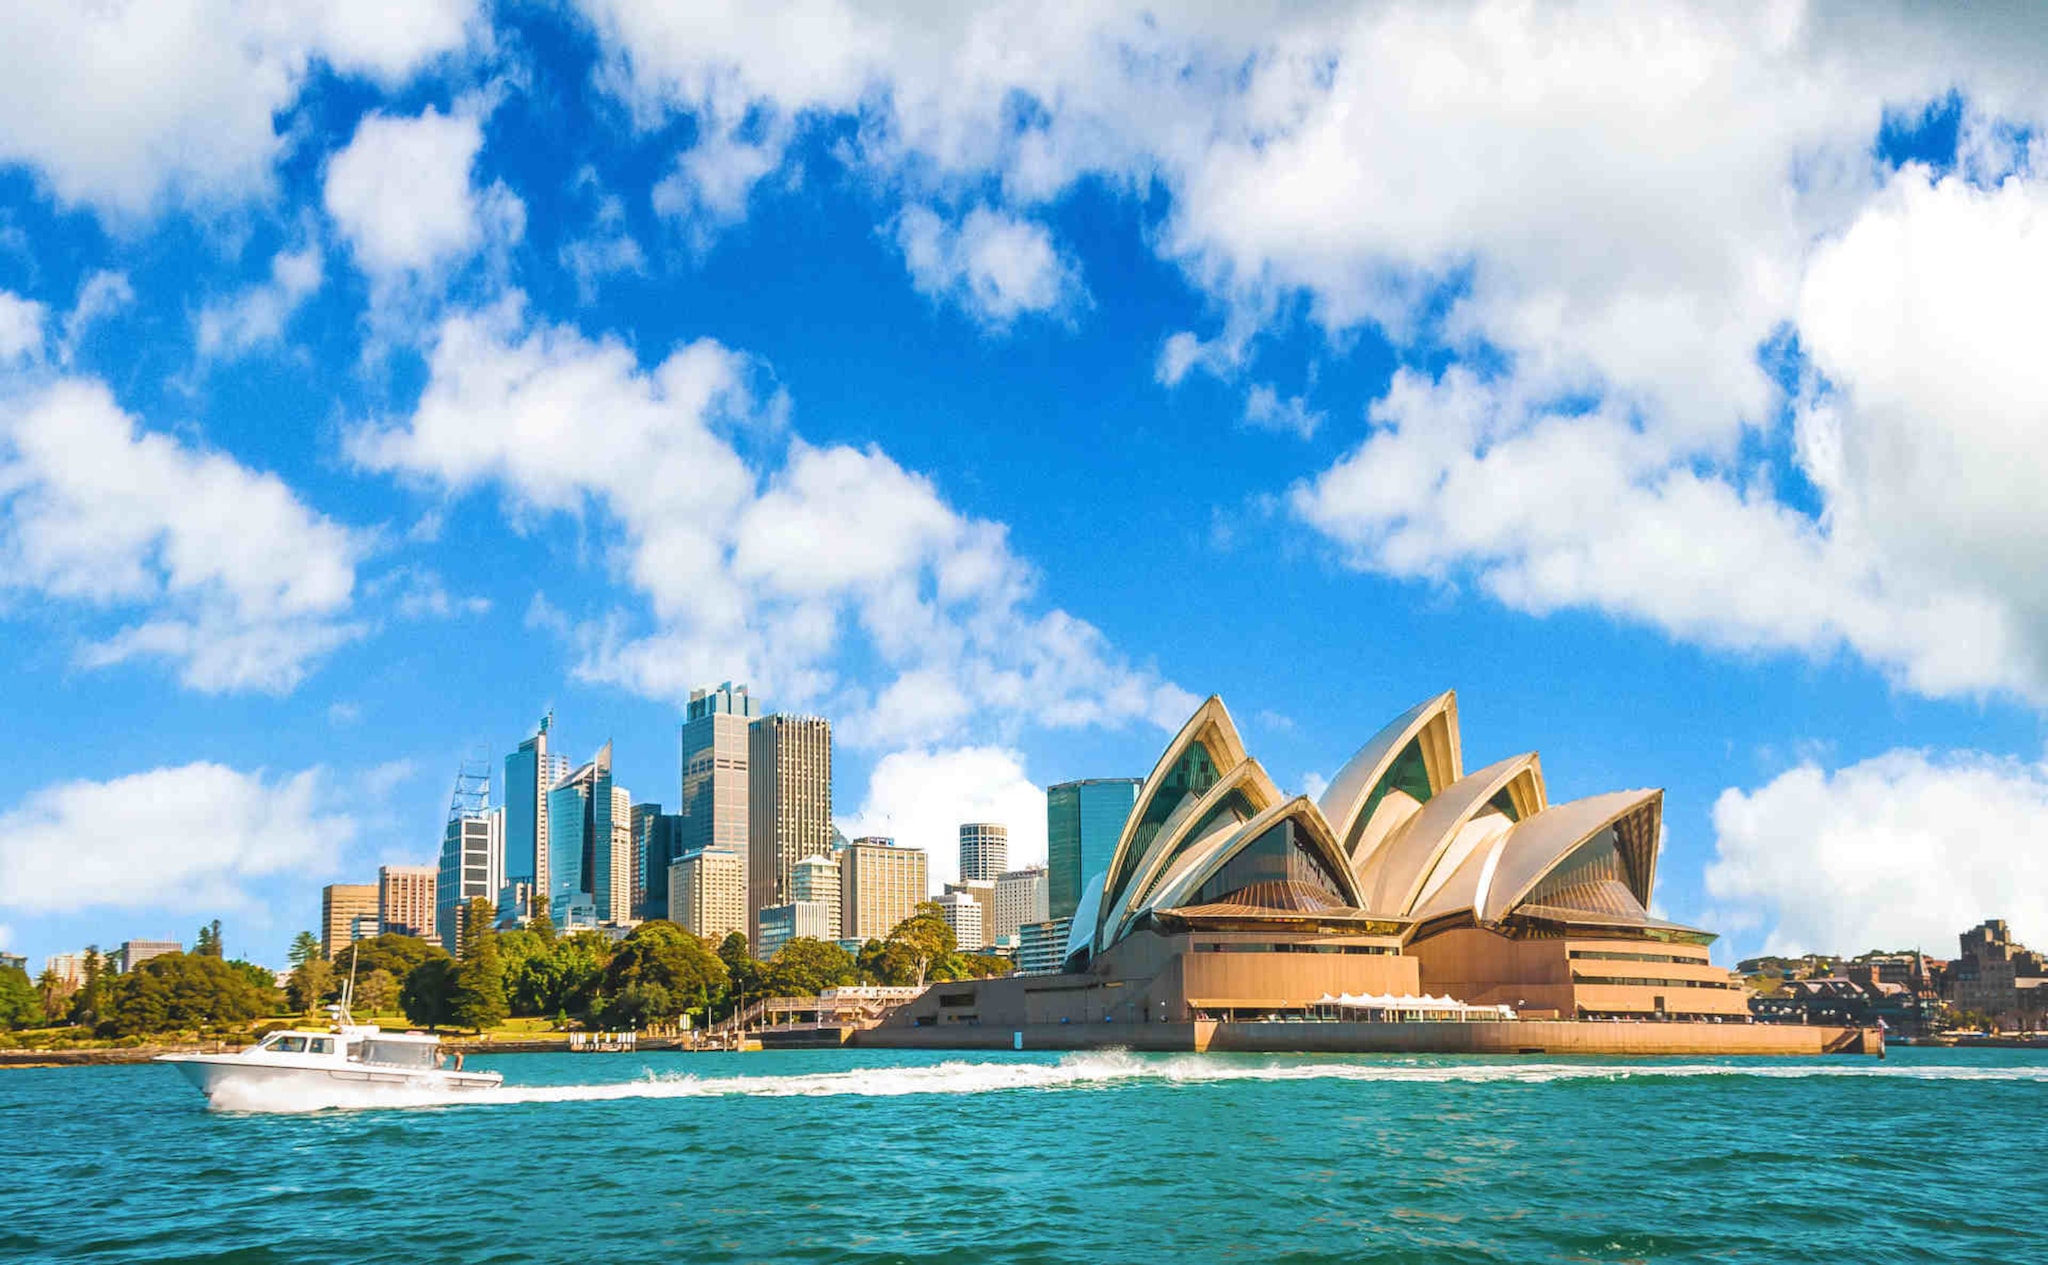 Fumare in Australia: foto dell’Opera House di Sydney